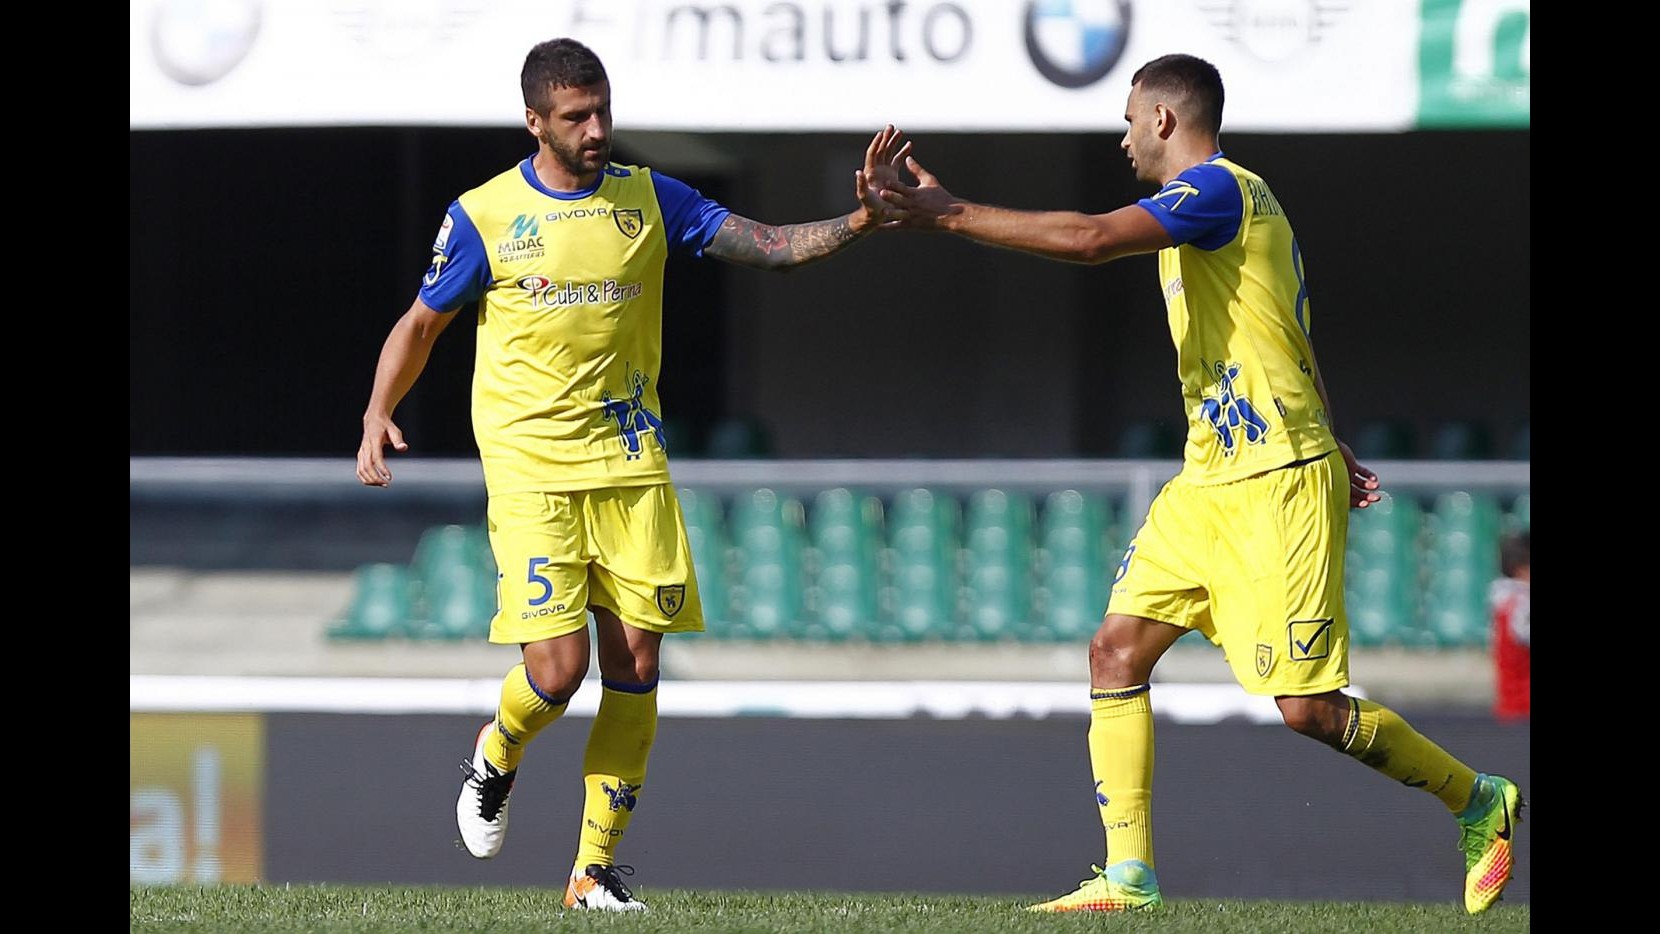 FOTO Finisce 1-1 la sfida tra Chievo e Lazio